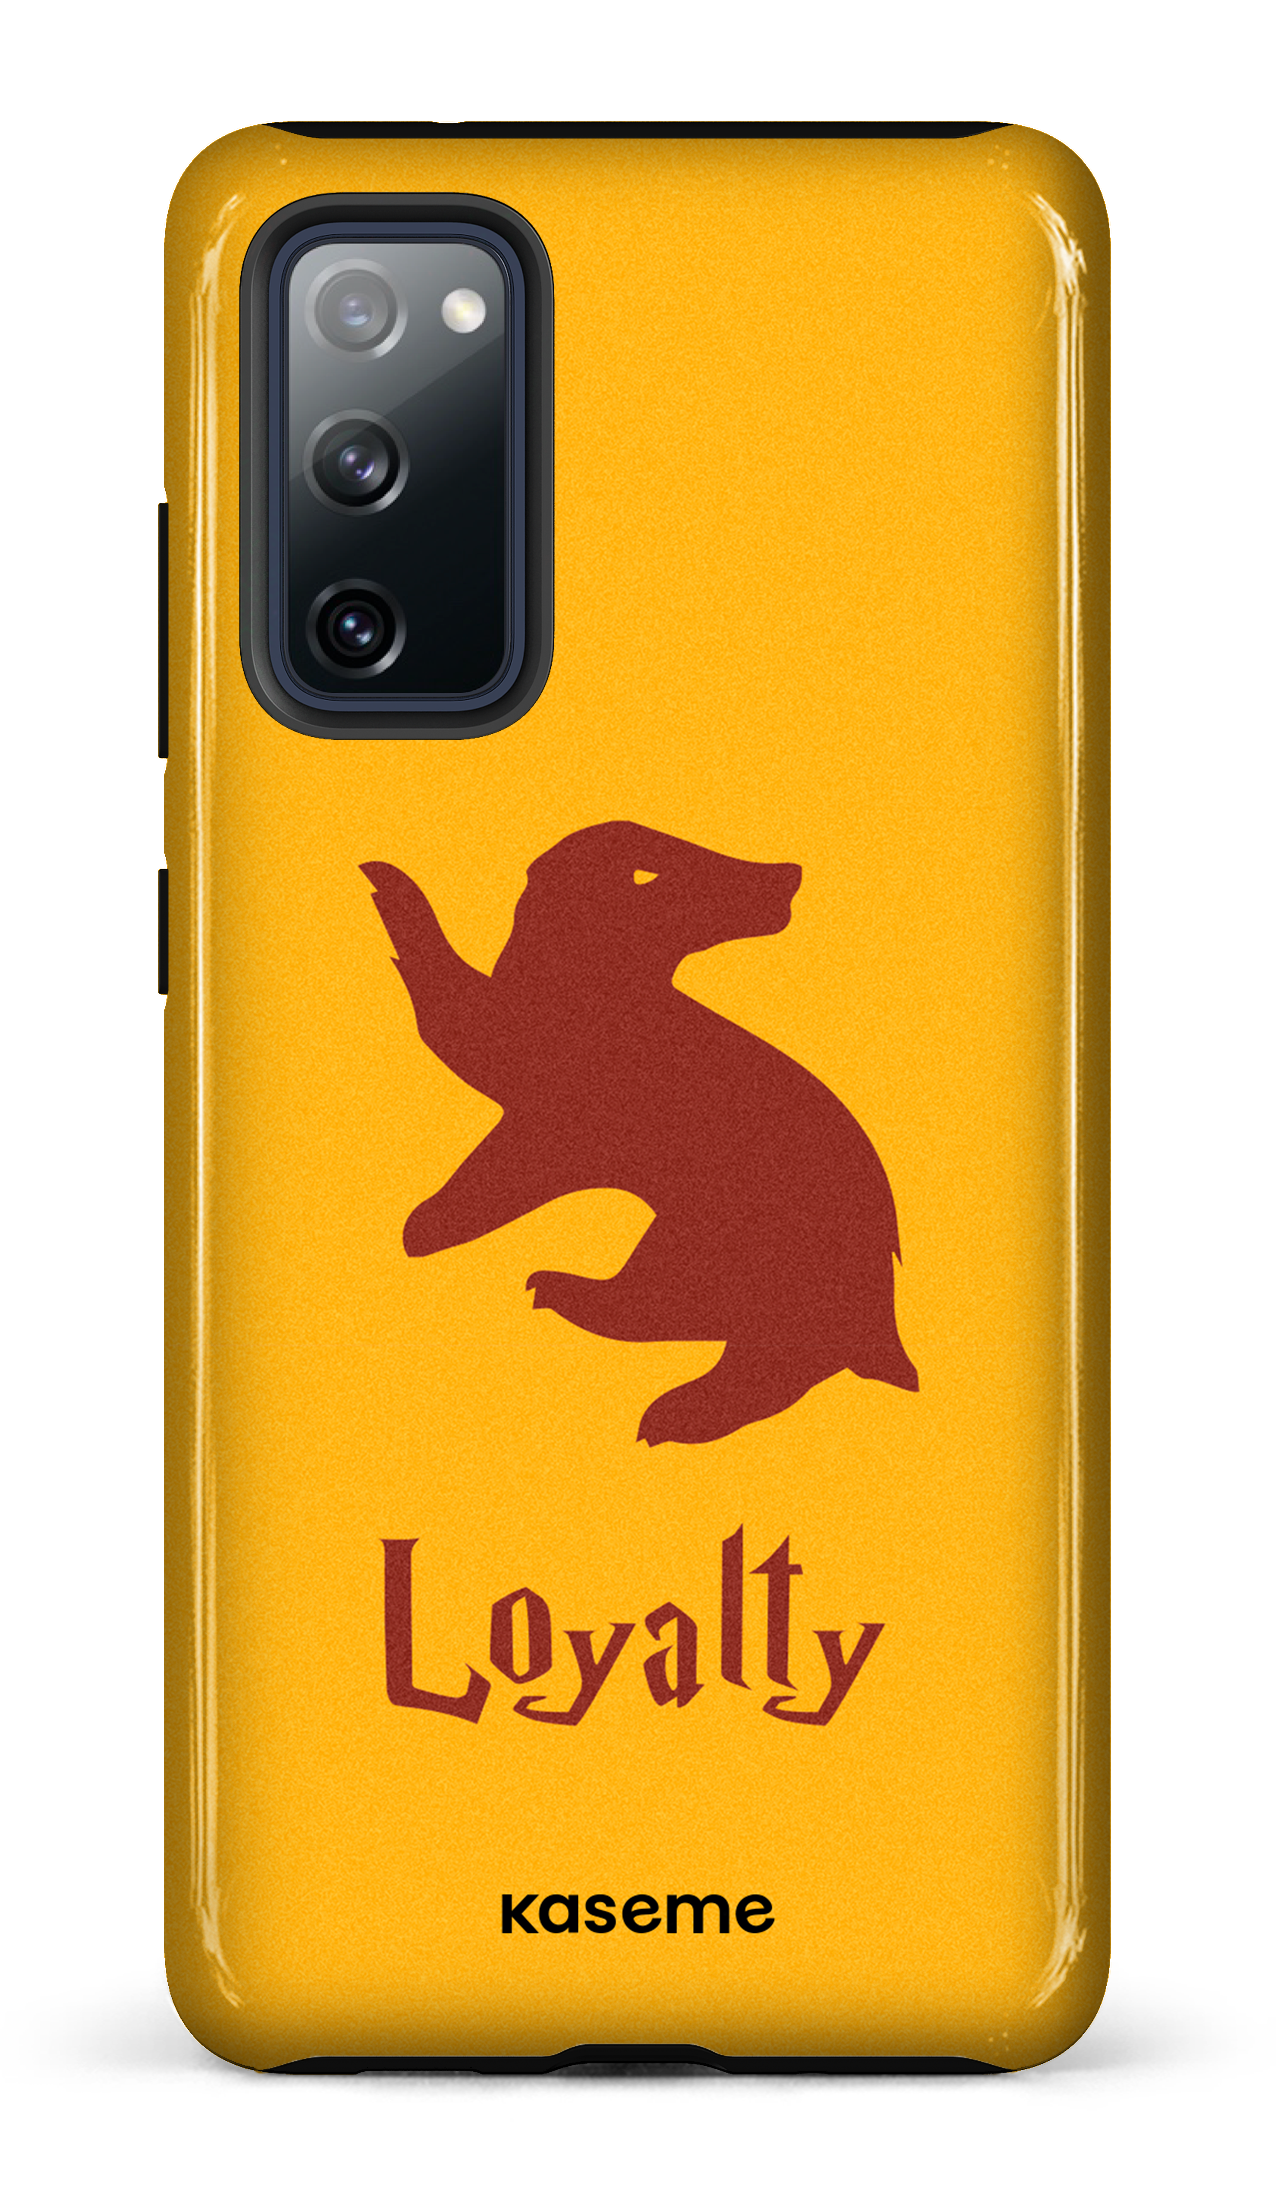 Loyalty - Galaxy S20 FE